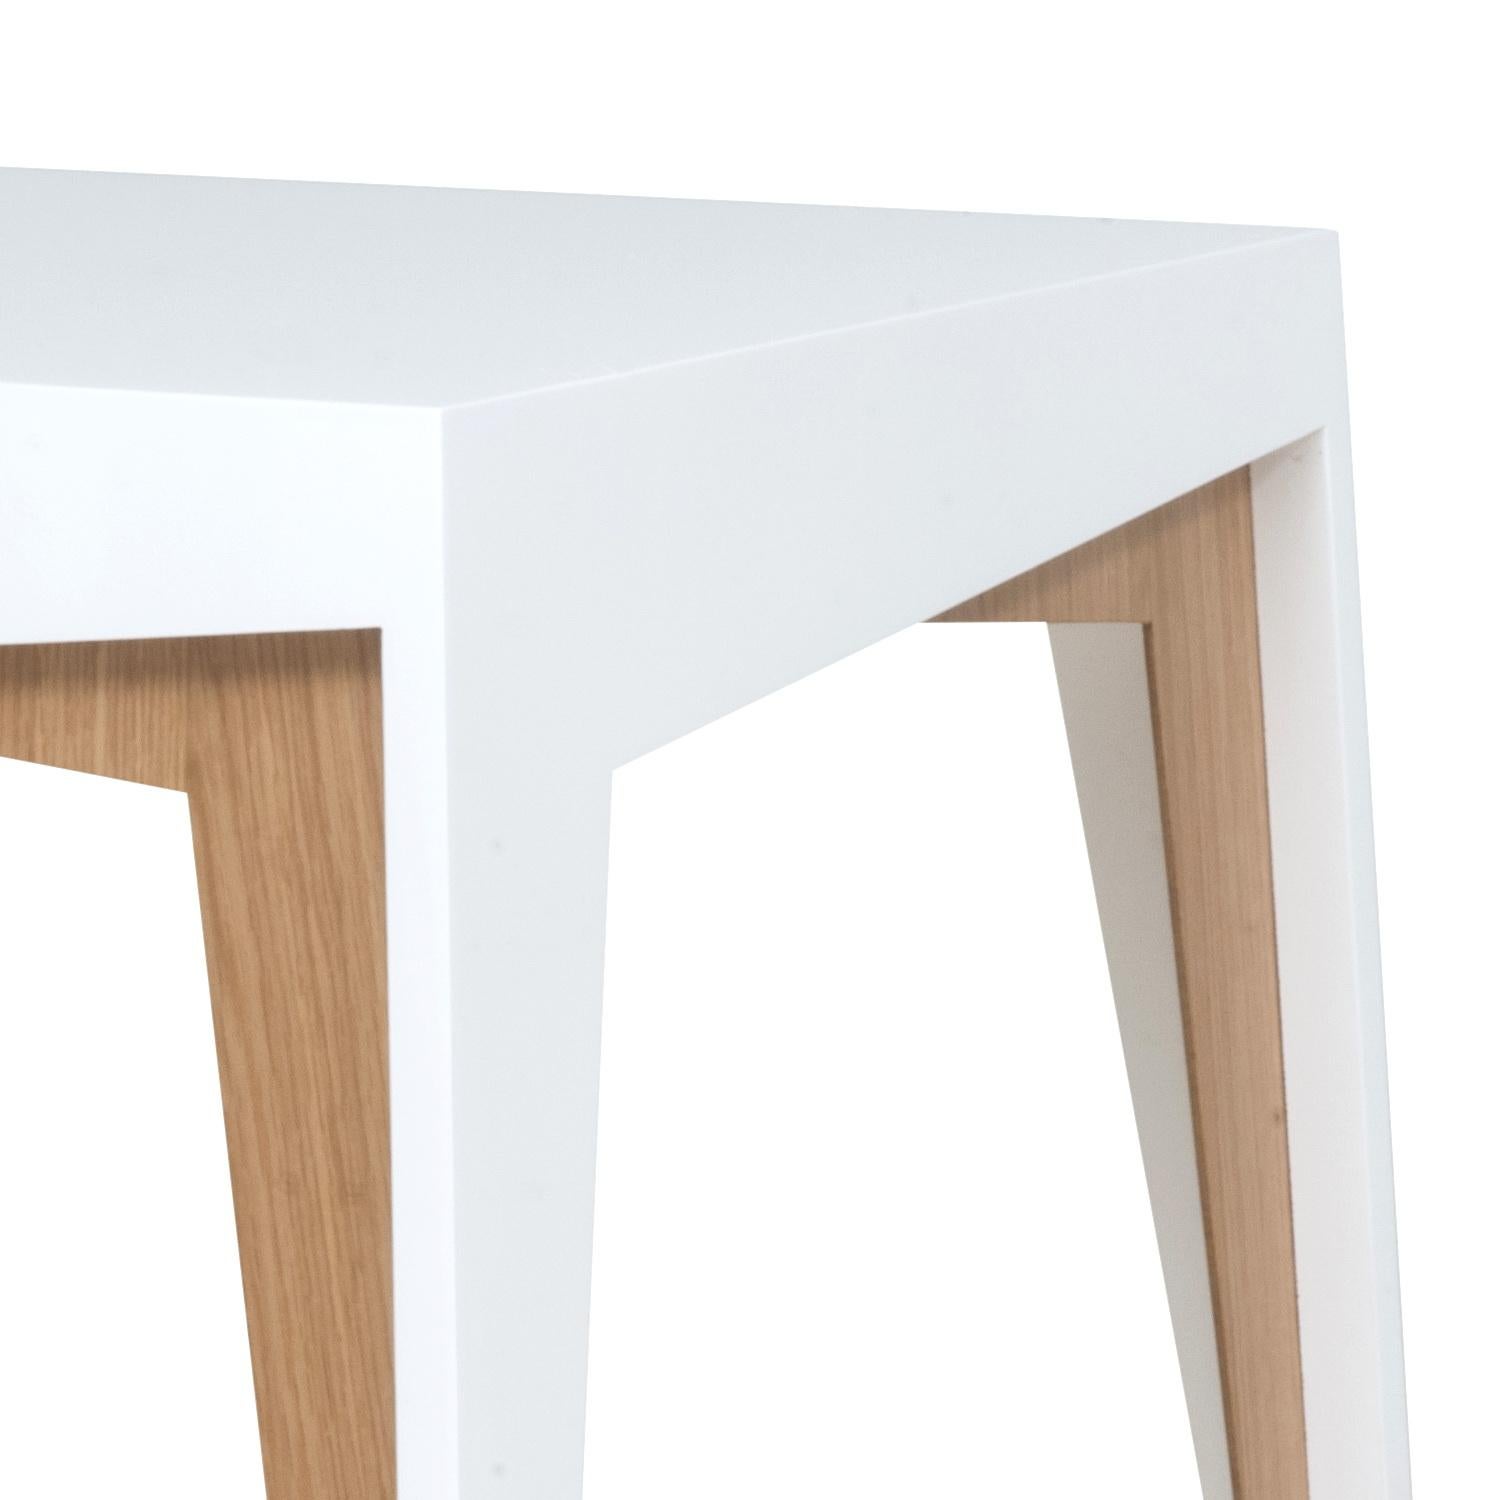 Oculta signifie caché en portugais. Cette table d'appoint joue avec l'idée d'avoir une table sous une autre table.
(Ce produit consiste en 1 seule table).